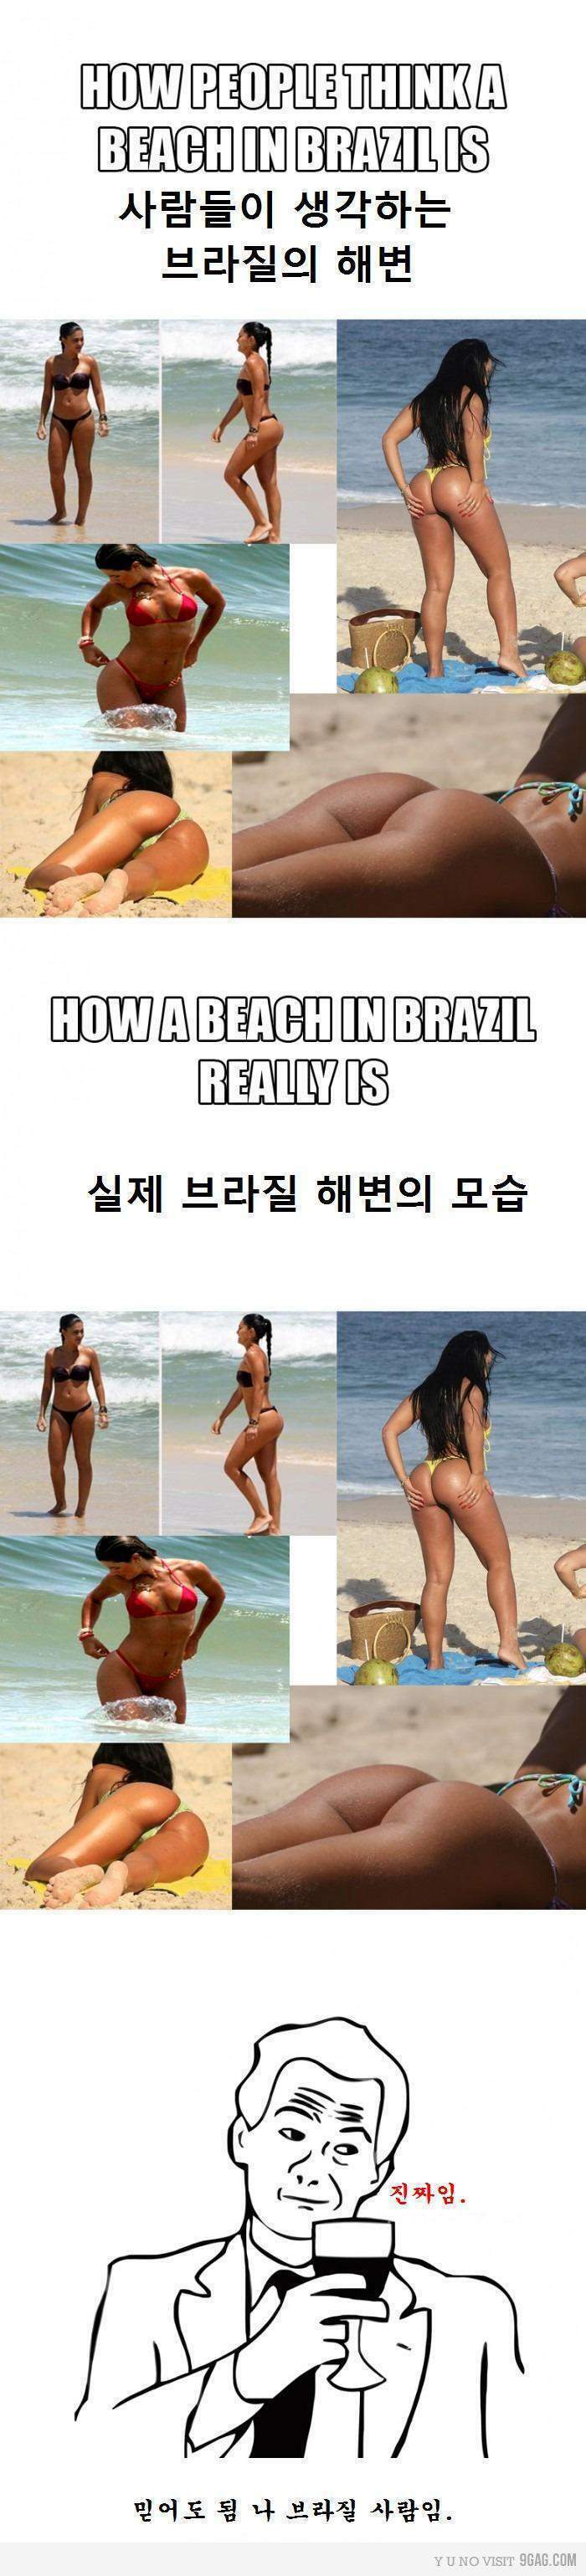 약후) 충격적인 브라질 해변의 실상